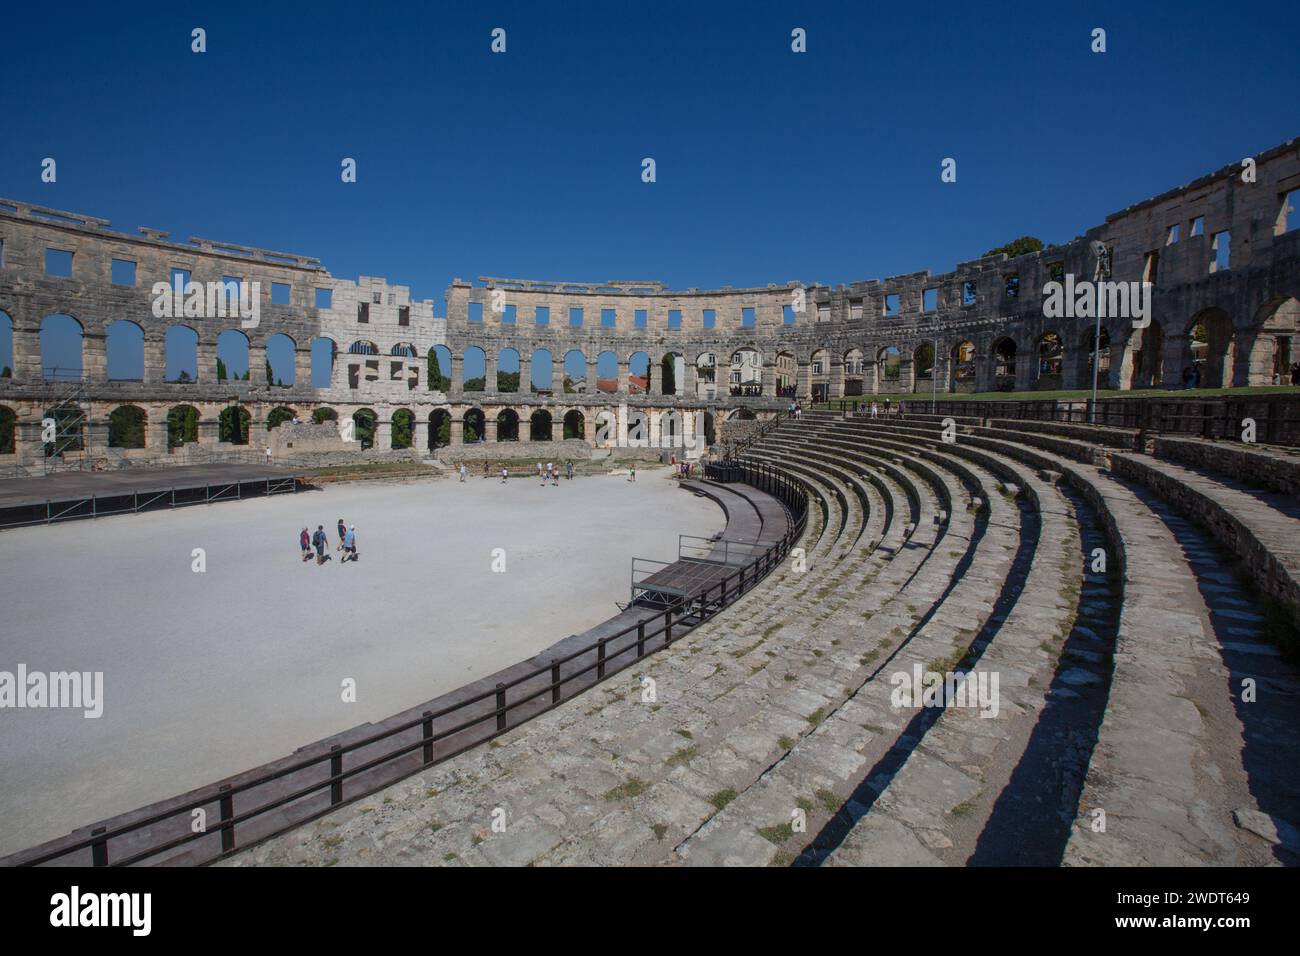 Pula Arena, amphithéâtre romain, construit entre 27 av. J.-C. et 68 après J.-C., Pula, Croatie, Europe Banque D'Images